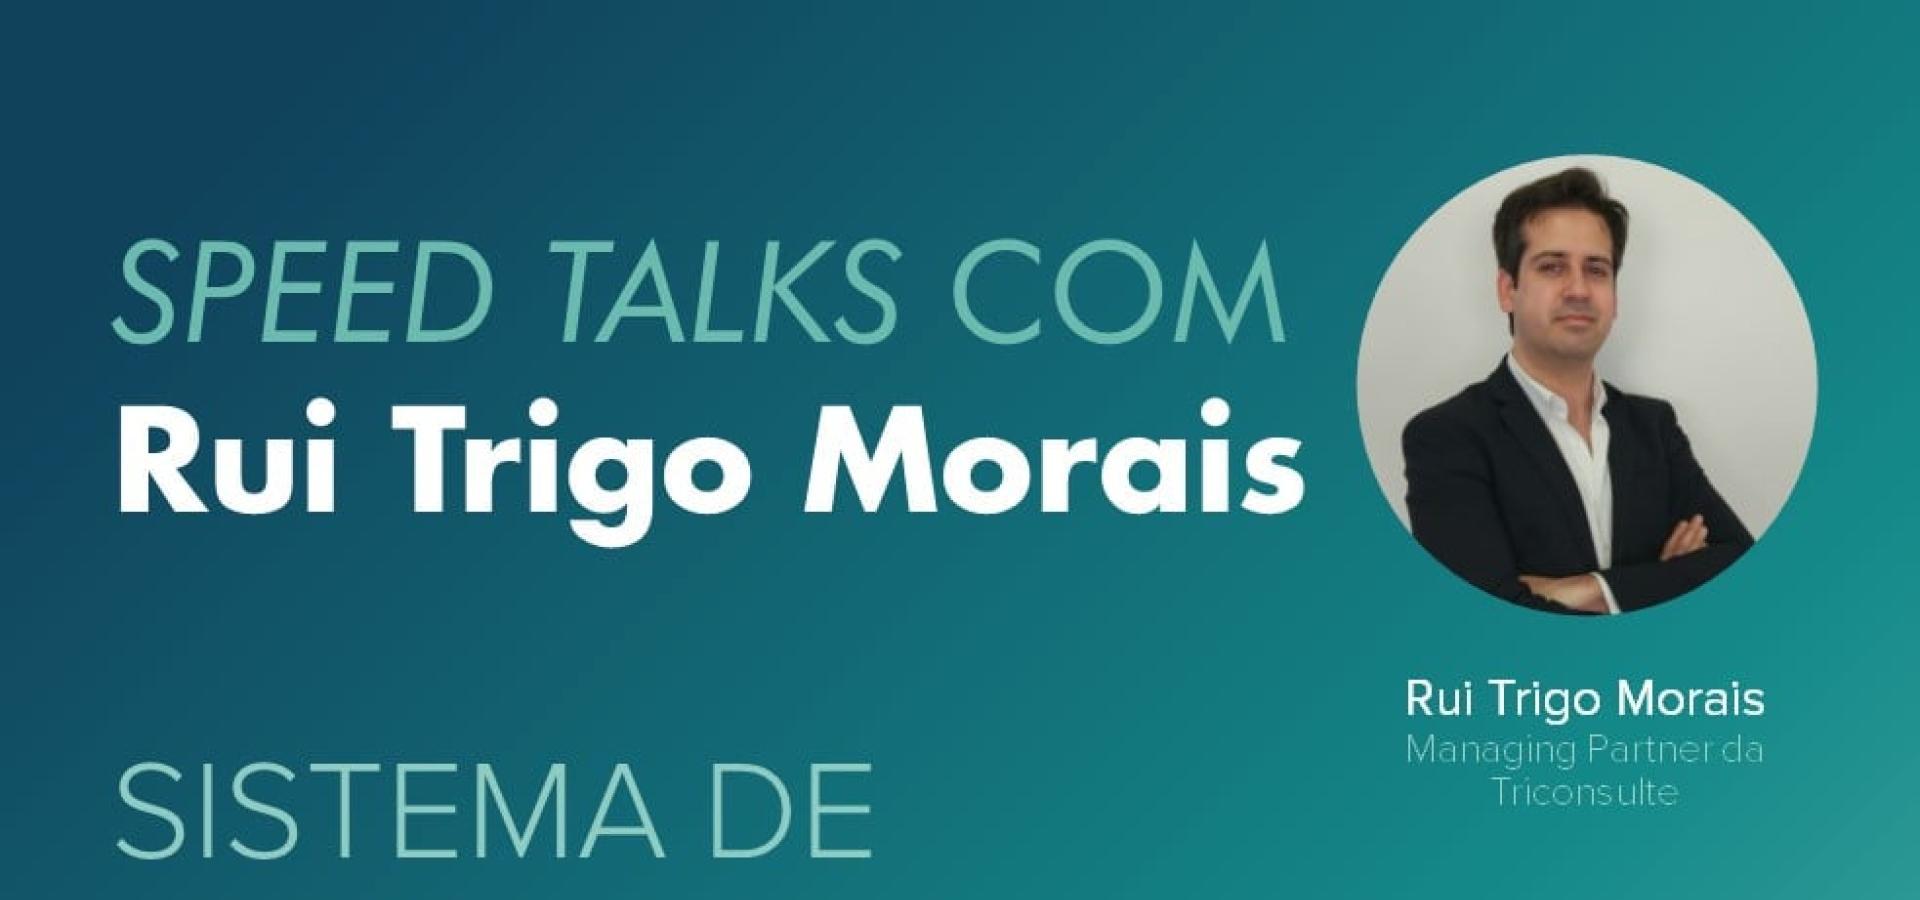 Speed Talks com Rui Trigo Morais